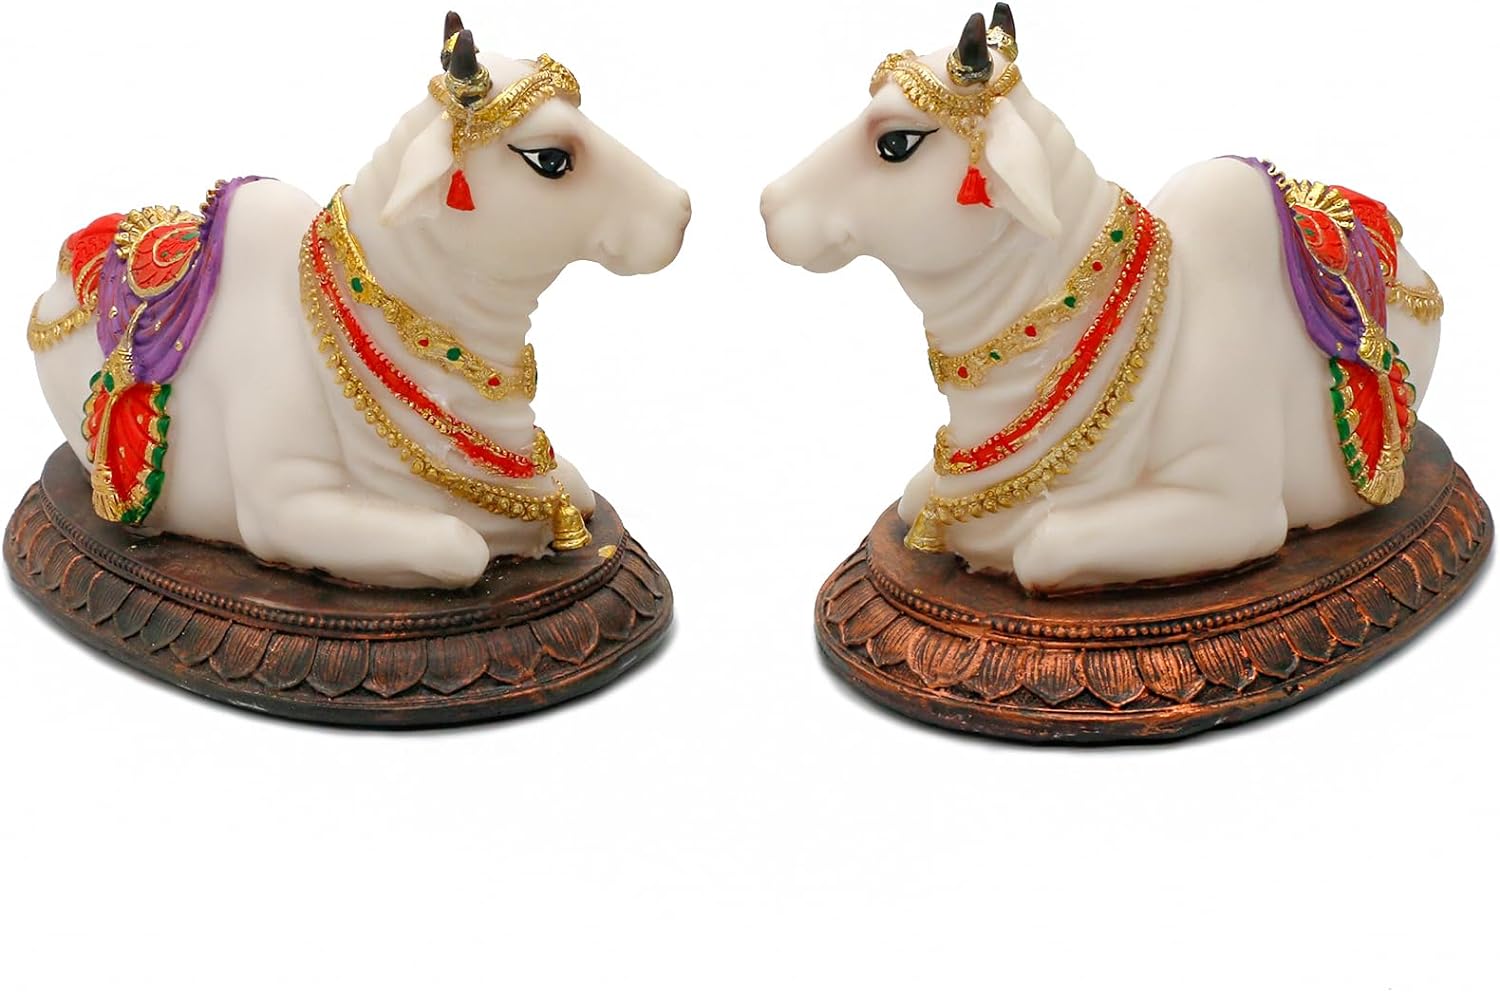 Hindu God Idol Nandi Statues - 6.6 L 2PCS Nandi Figurines Gift for Indian Friends Family Man Woman Diwali Gifts Pooja Return Gifts Diwali Murti Item Home Office Mandir Temple Puja Decor